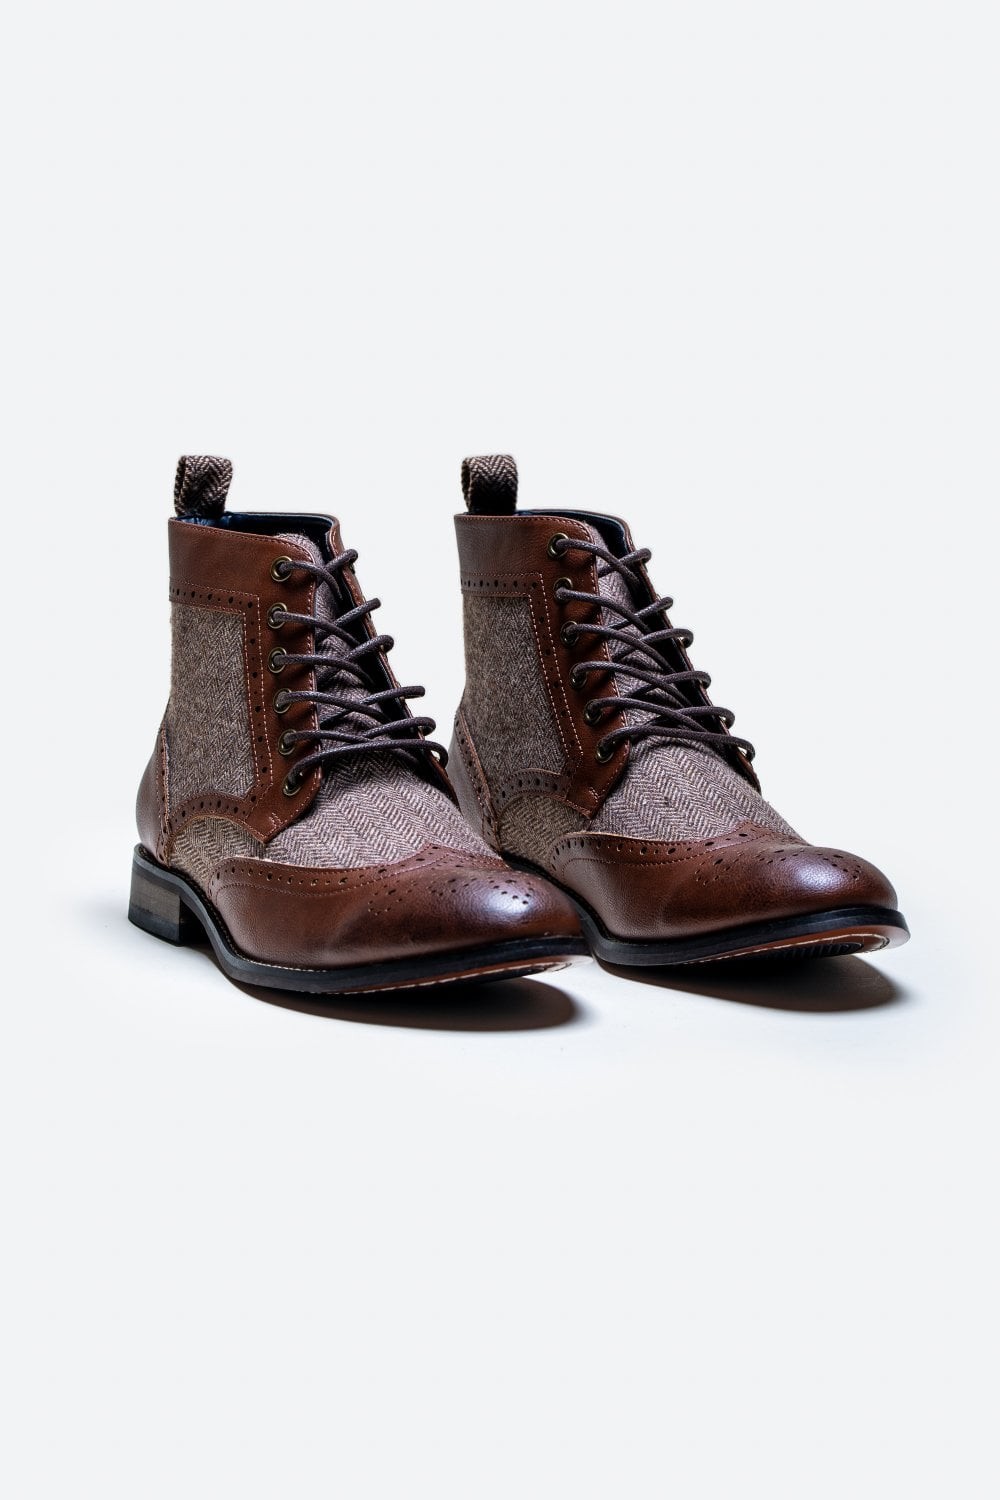 Chaussures brogues montantes à lacets pour hommes - JONES - Brun